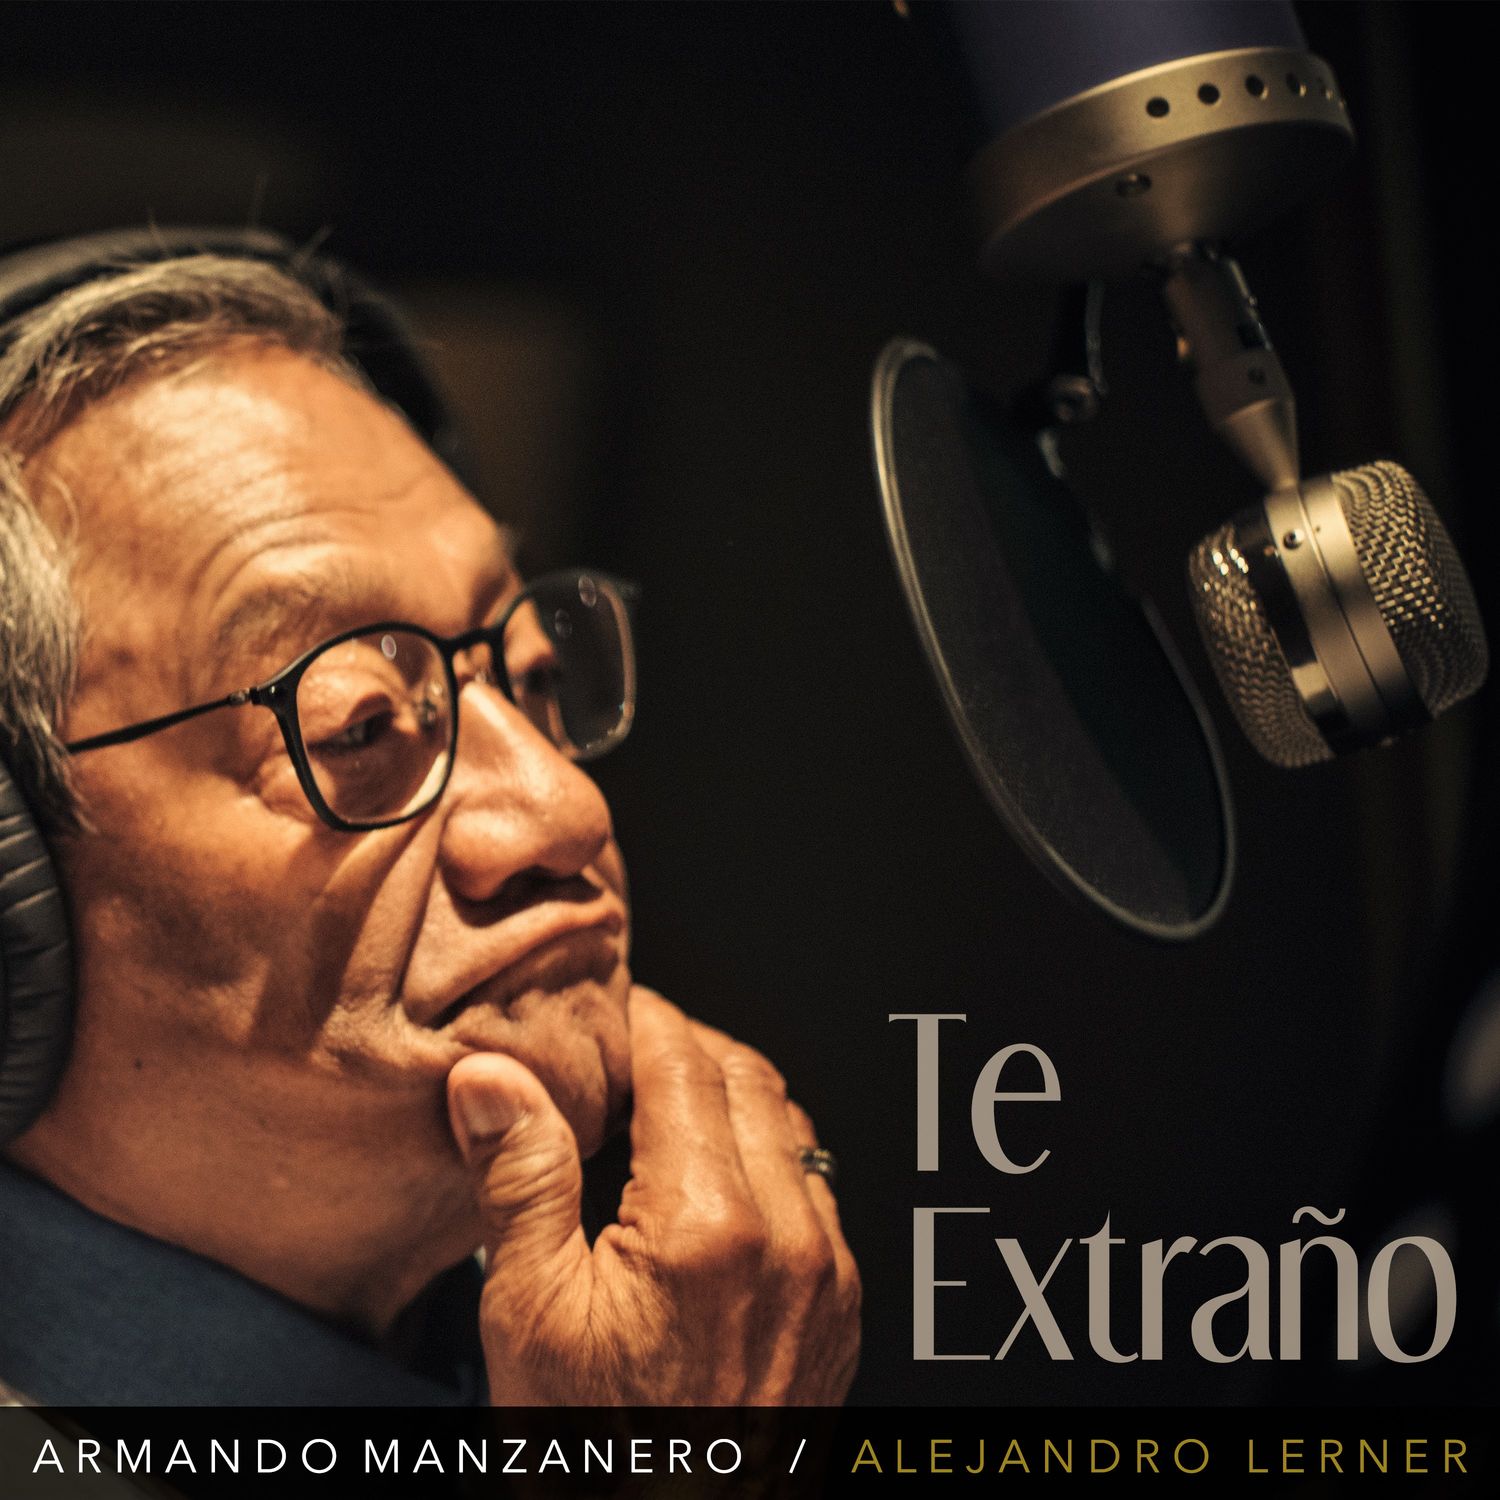 Armando Manzanero - Te extraño